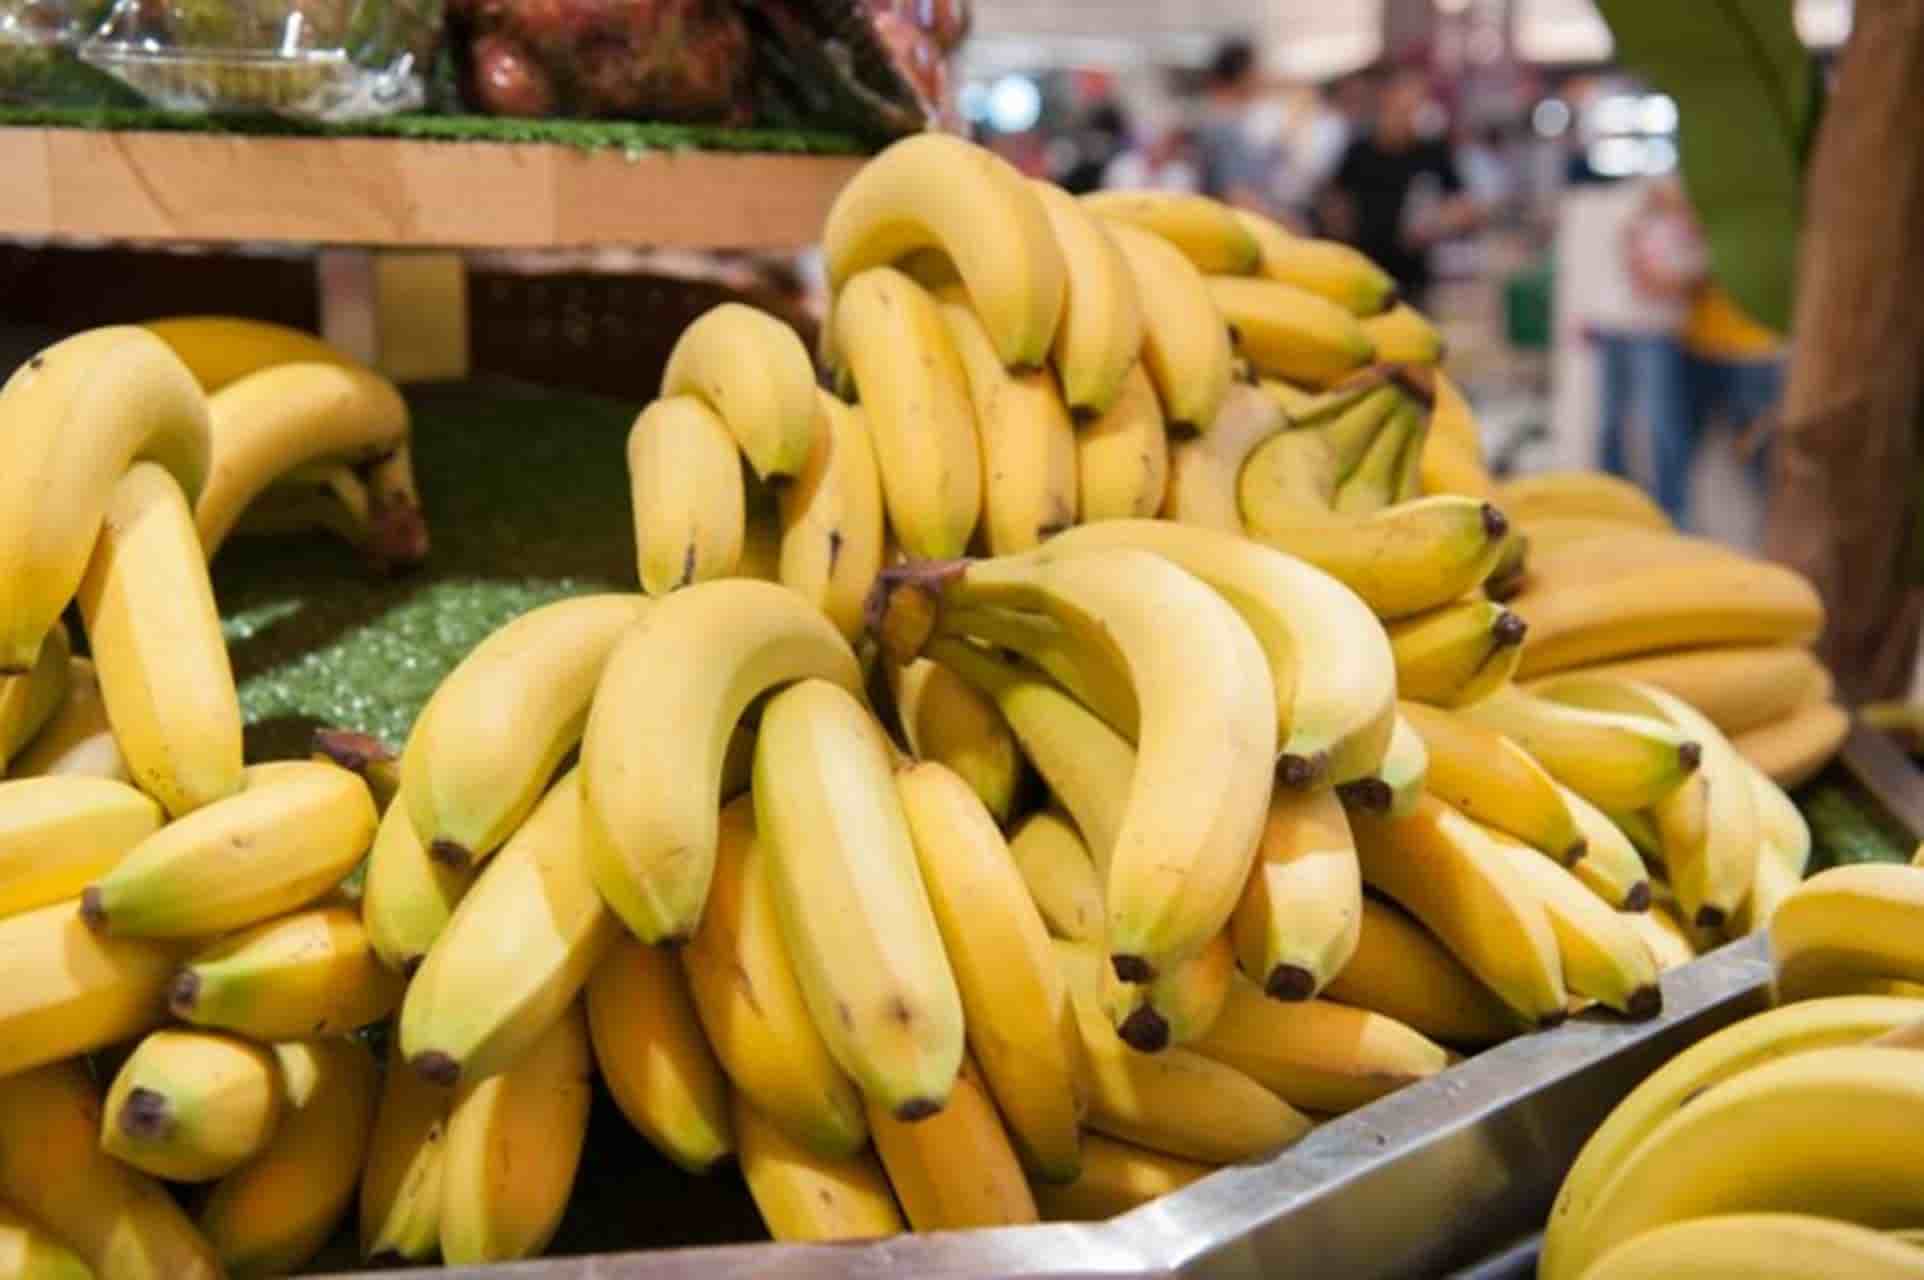 Truque infalível para manter as bananas frescas e sem manchas